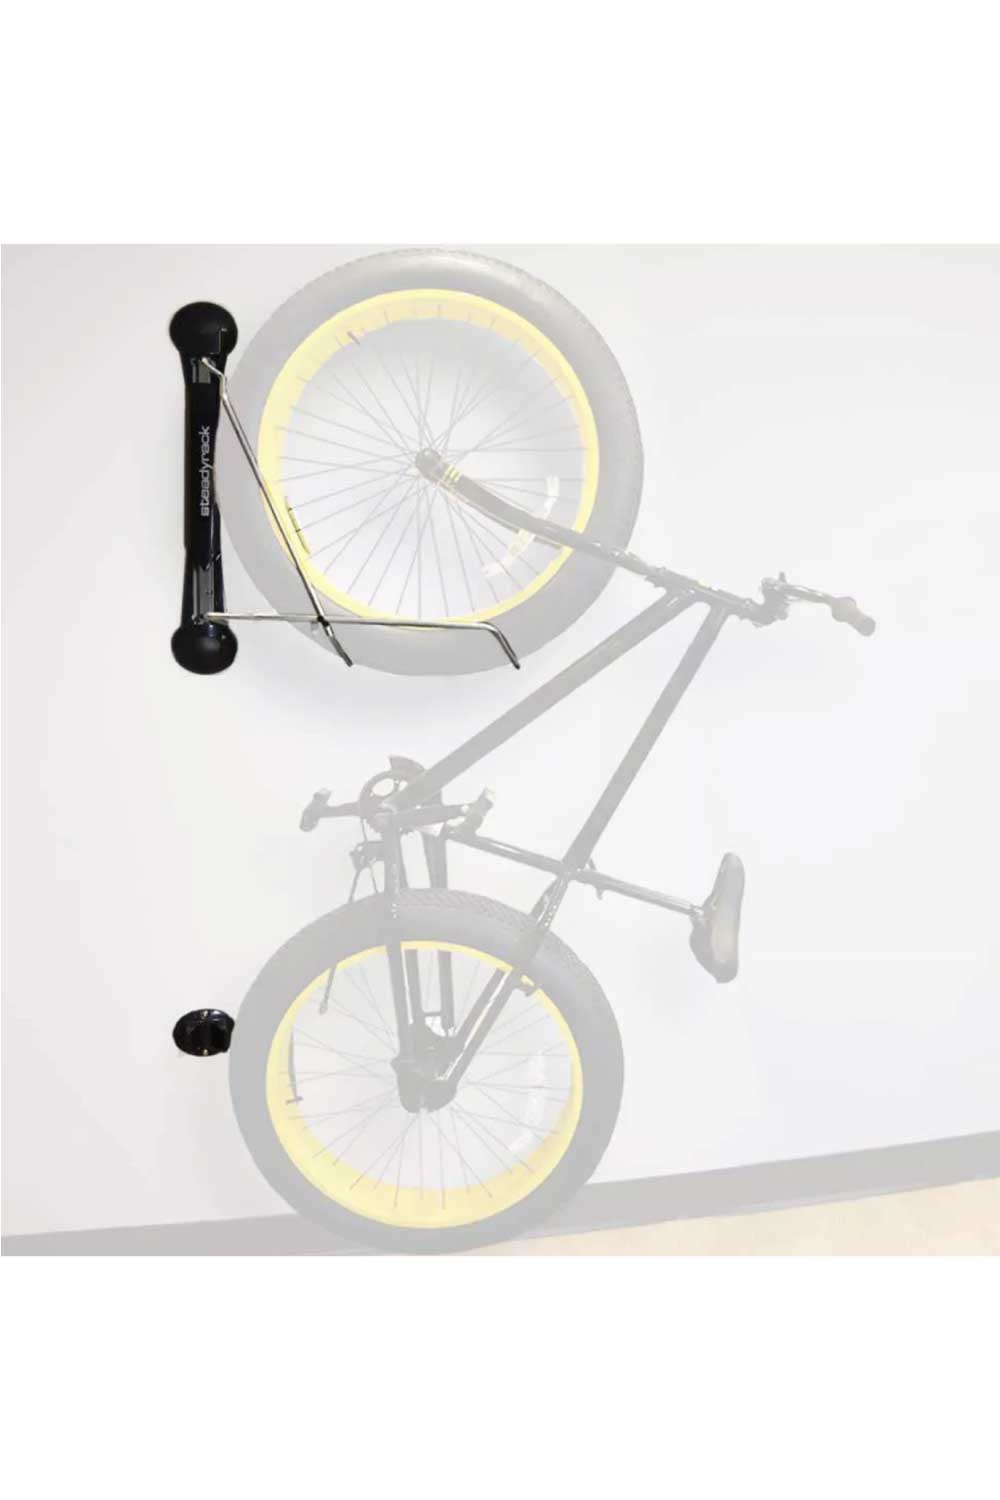 specialized kilian bike stand